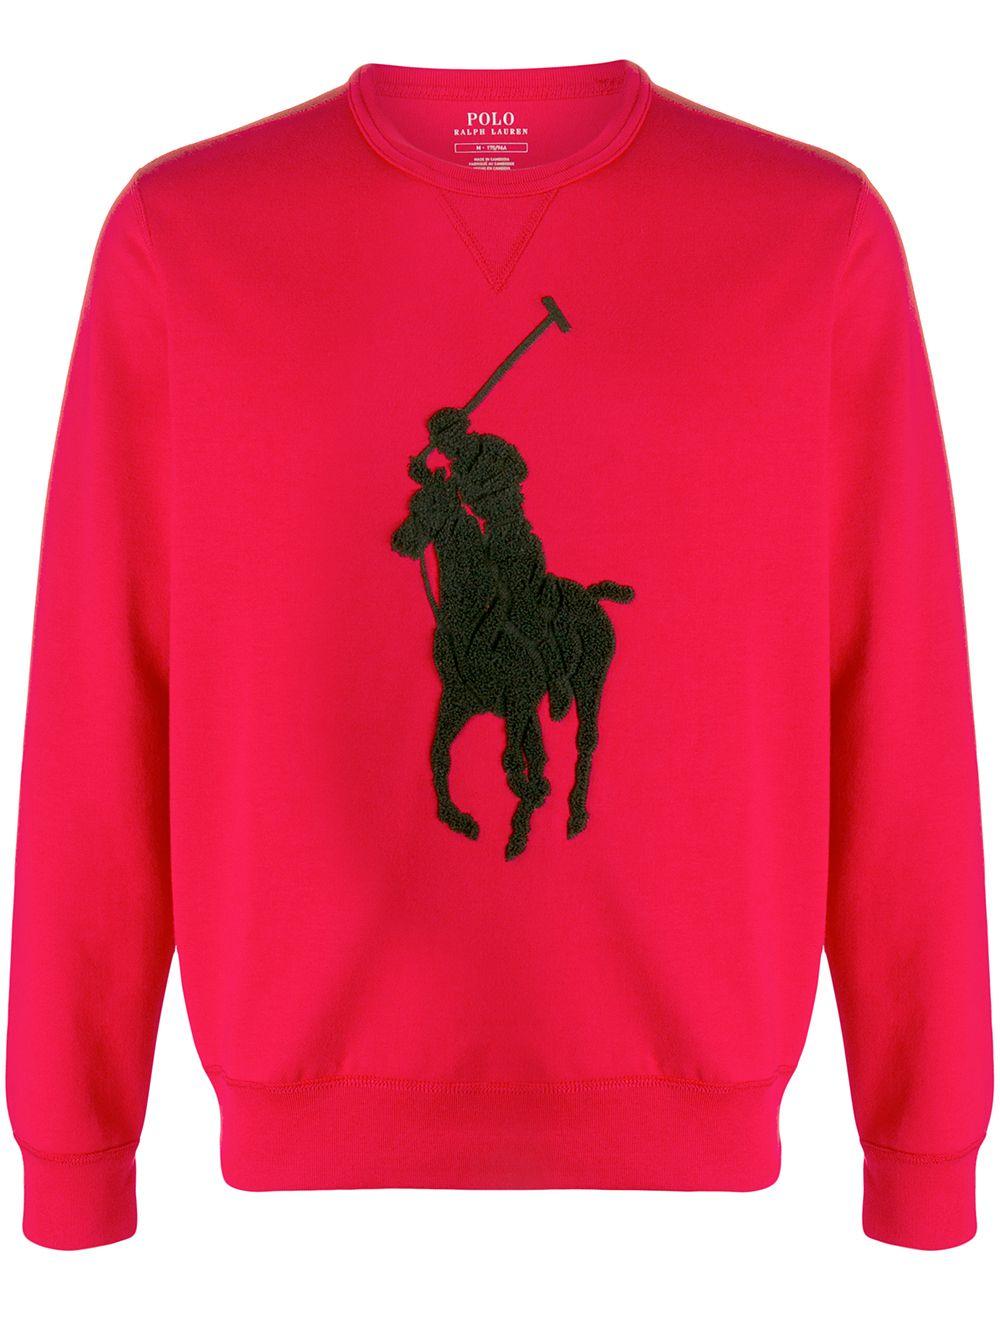 polo ralph lauren red sweatshirt